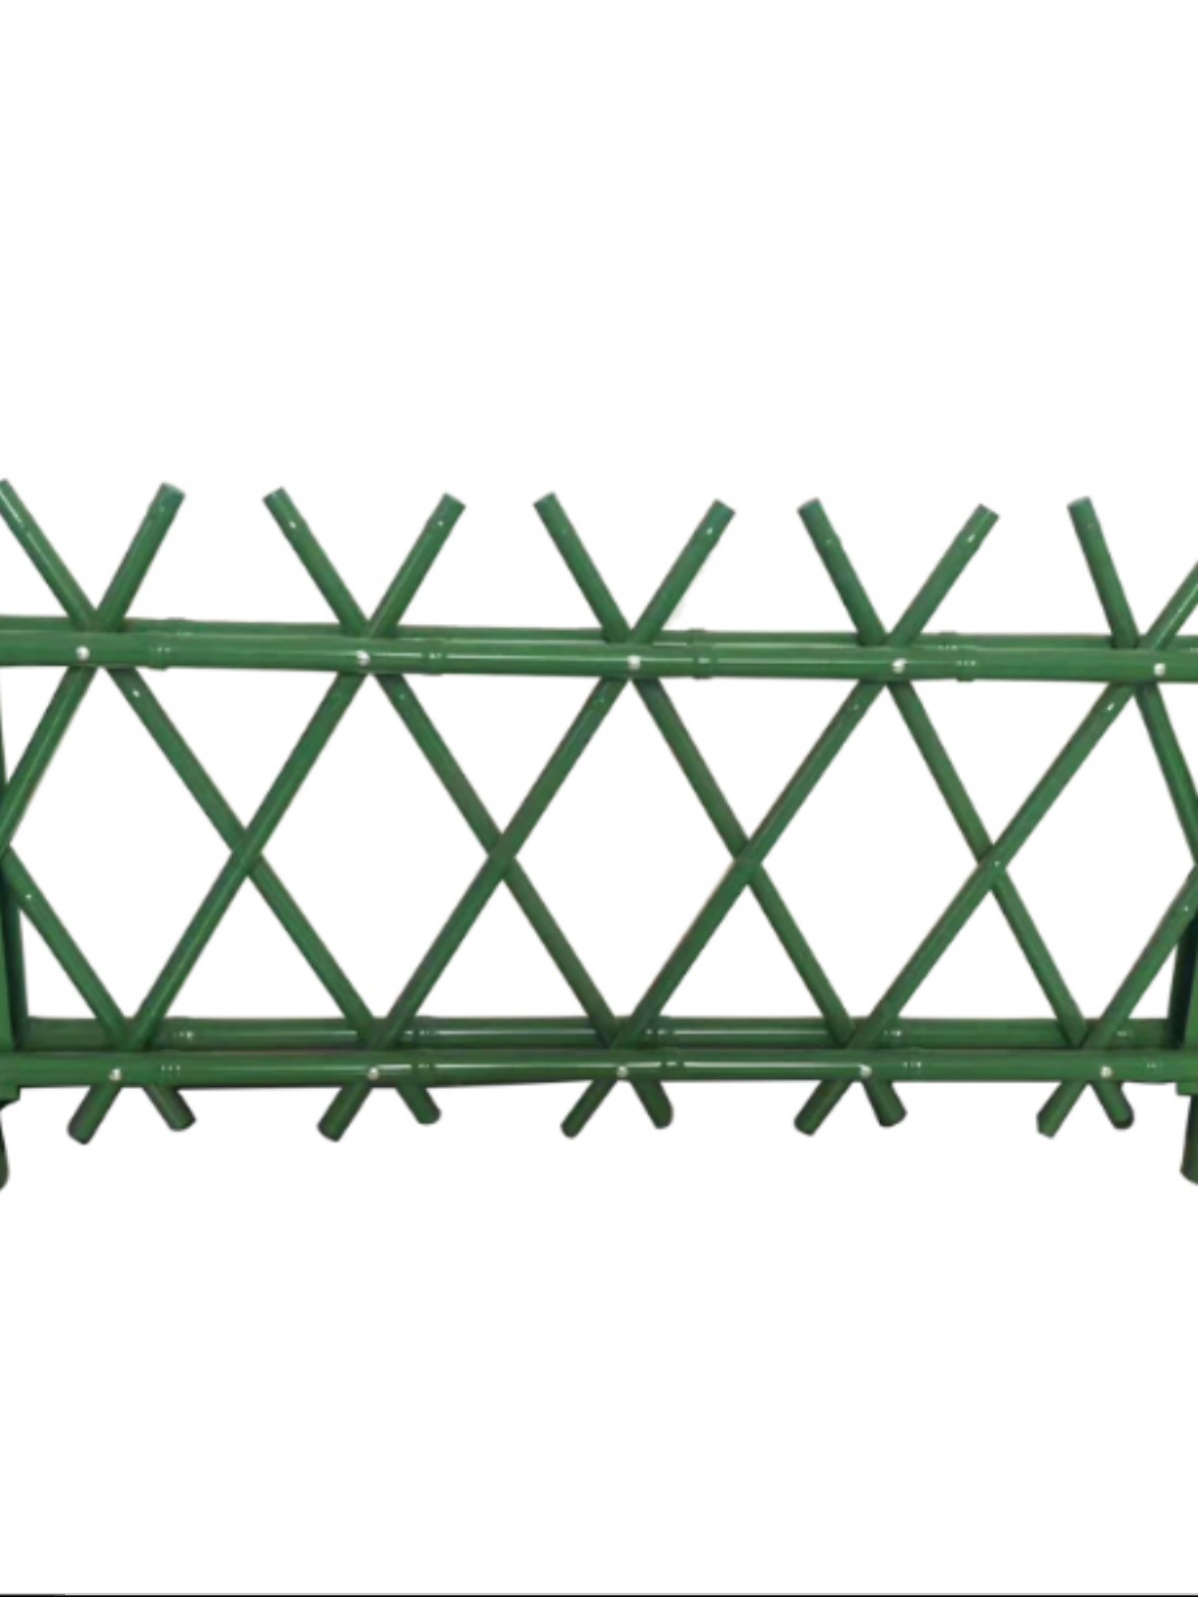 不锈钢仿竹护栏美丽乡村菜园真竹栏杆江苏园林绿化竹篱笆栅栏围栏